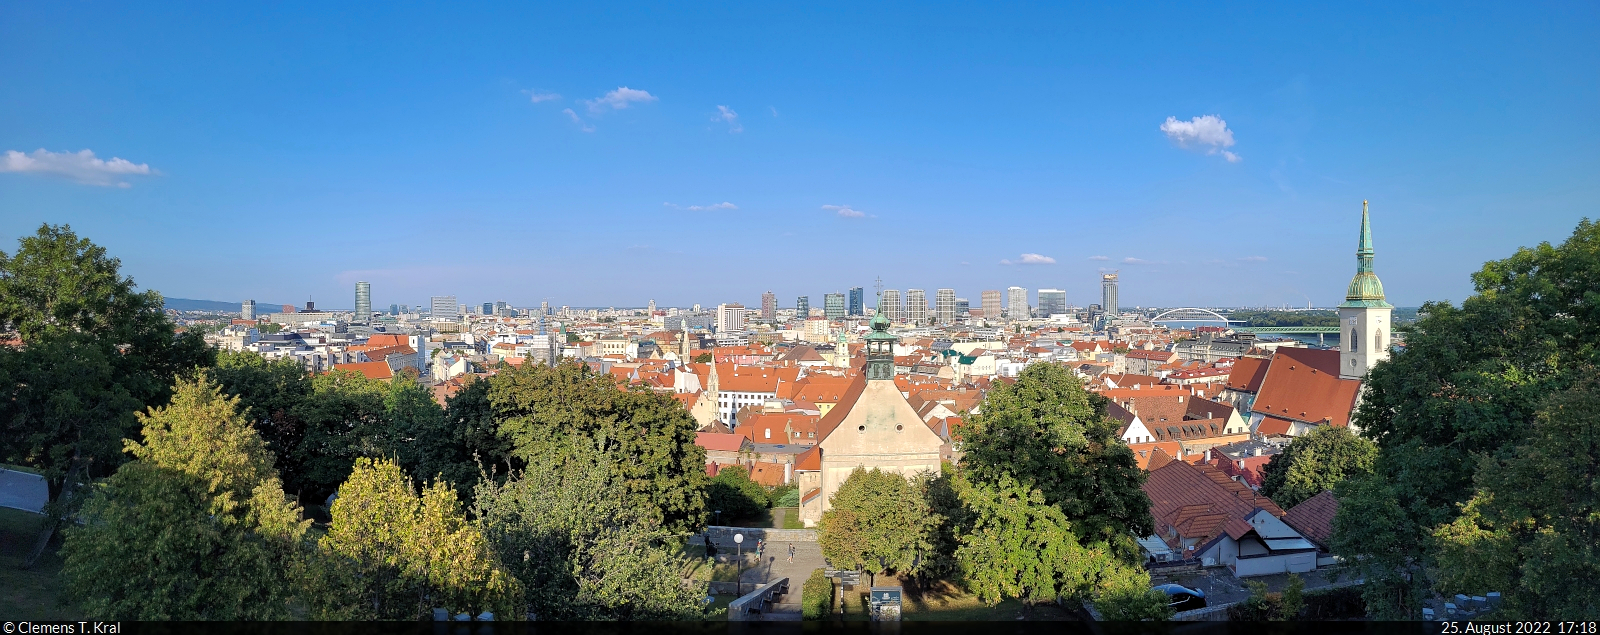 Bratislava (SK):
Stadt-Panorama von der Terrasse eines Restaurants neben der Burg. Etliche alte Bauwerke sind erhalten geblieben und stehen im Kontrast zu den teils gewagt aussehenden Neubauten.

🕓 25.8.2022 | 17:18 Uhr